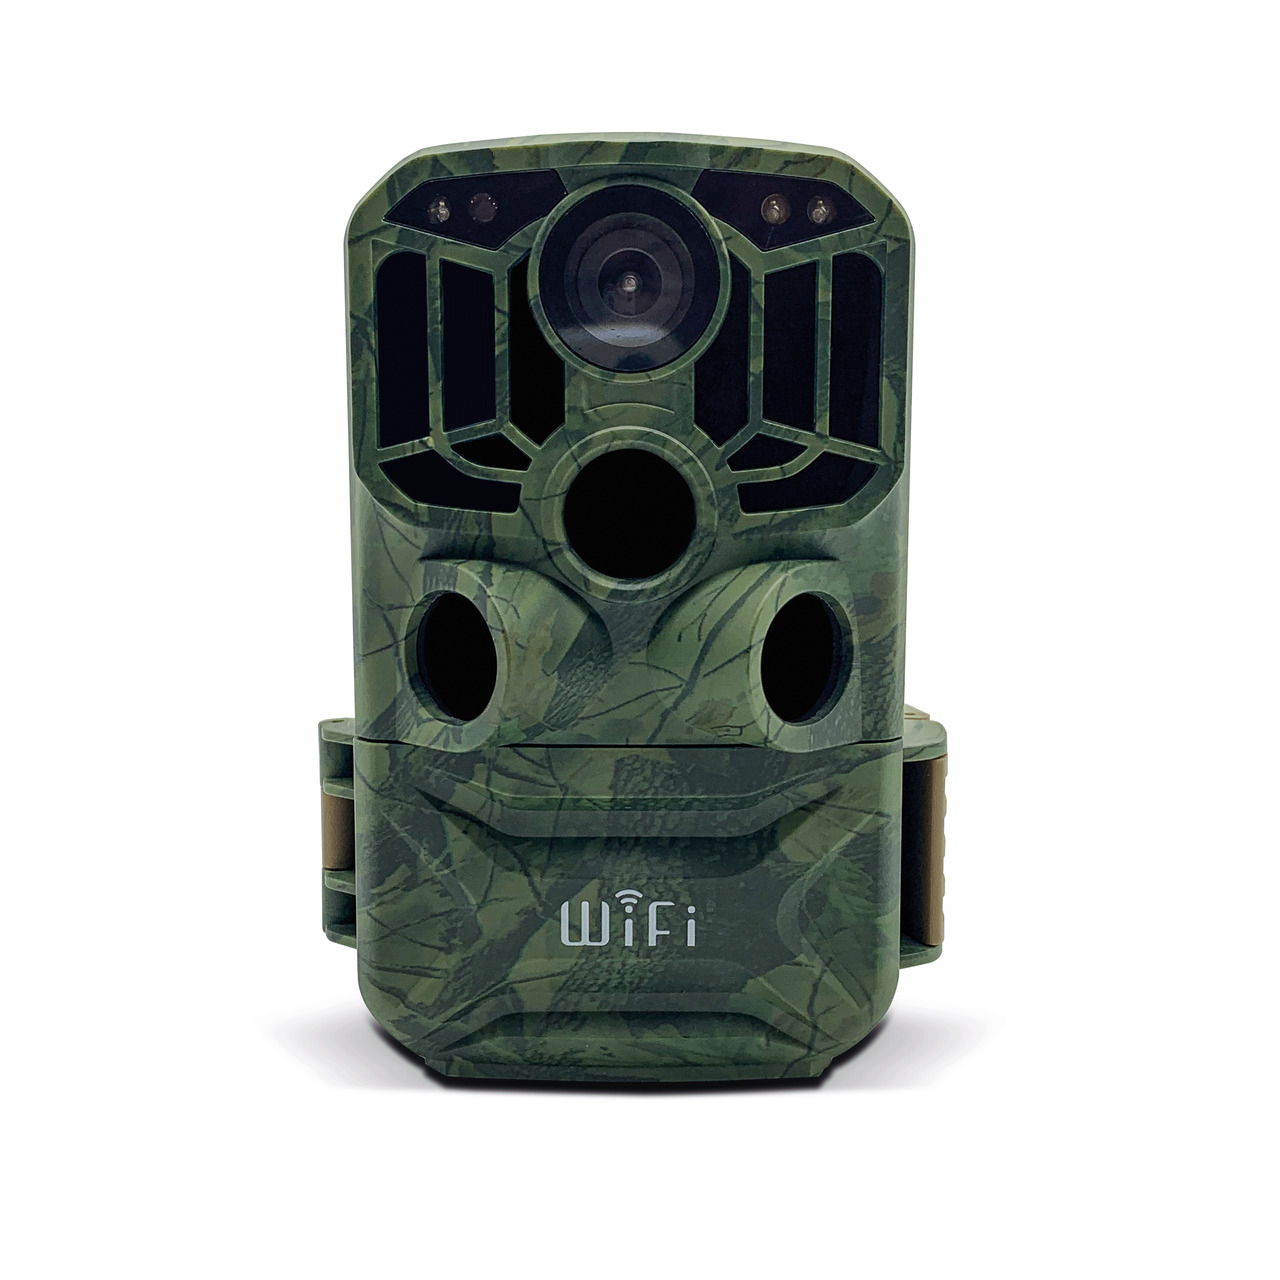 Braun Fotofalle - Wildkamera Scouting Cam BLACK800 WiFi- Auslösezeit 0-6 s- IP66